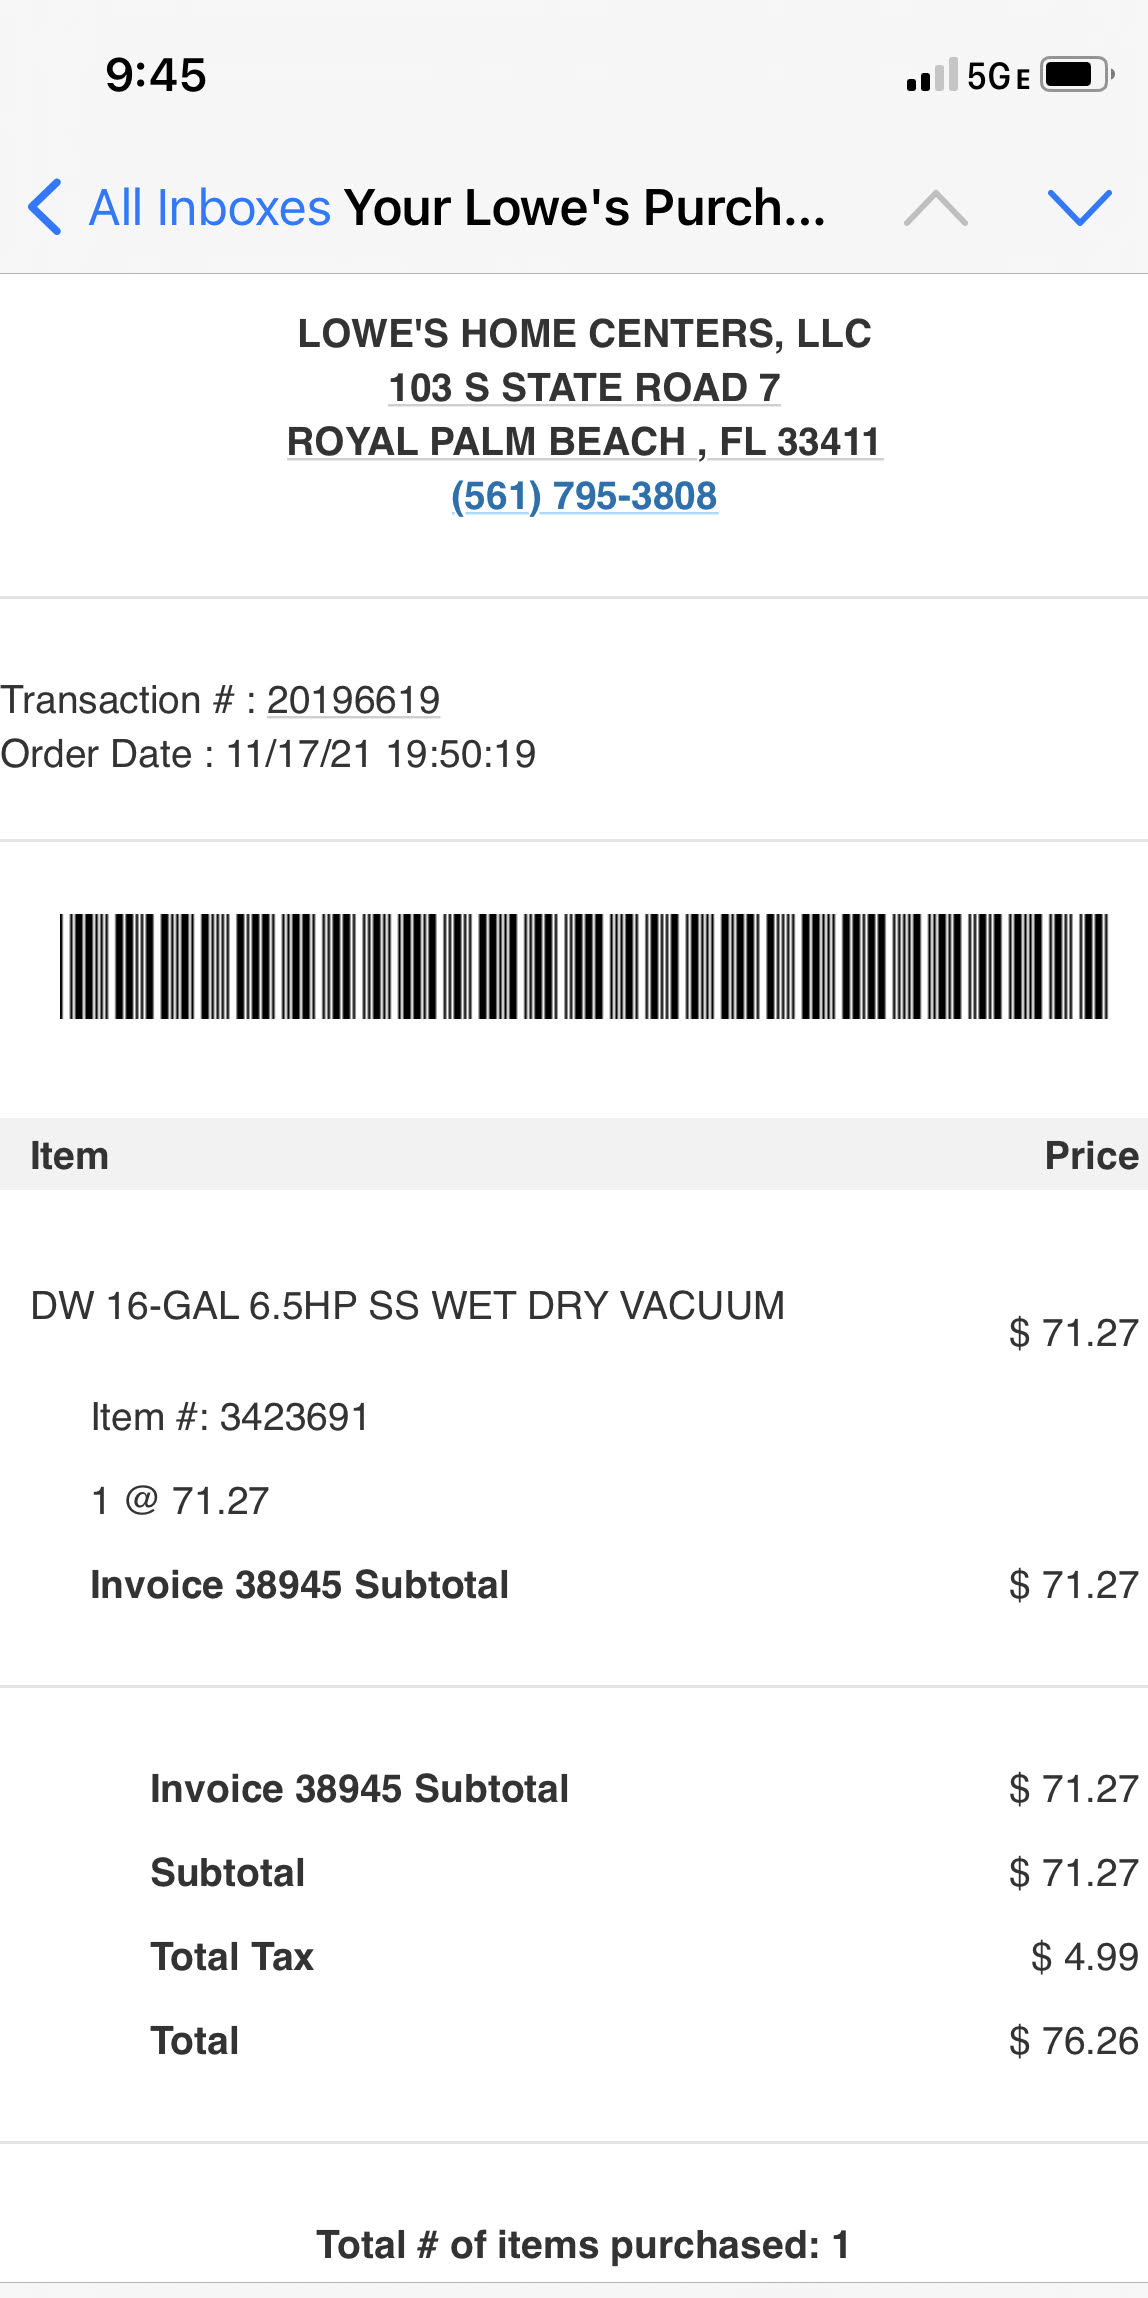 DEWALT 16-Gallon Corded Portable Wet/Dry Shop Vacuum (Corded) Lowes.com - $71.27